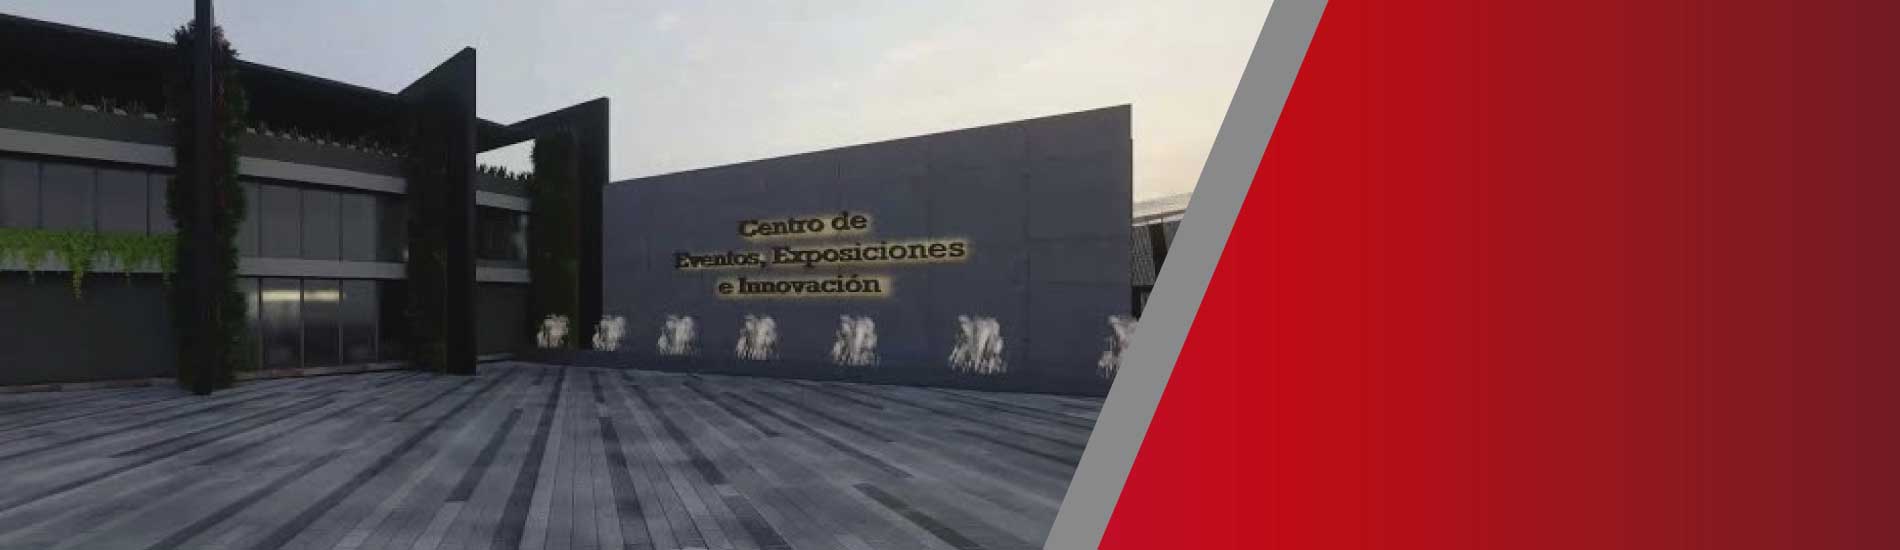 Centro de Eventos, Exposiciones e Innovación será una realidad para Norte de Santander